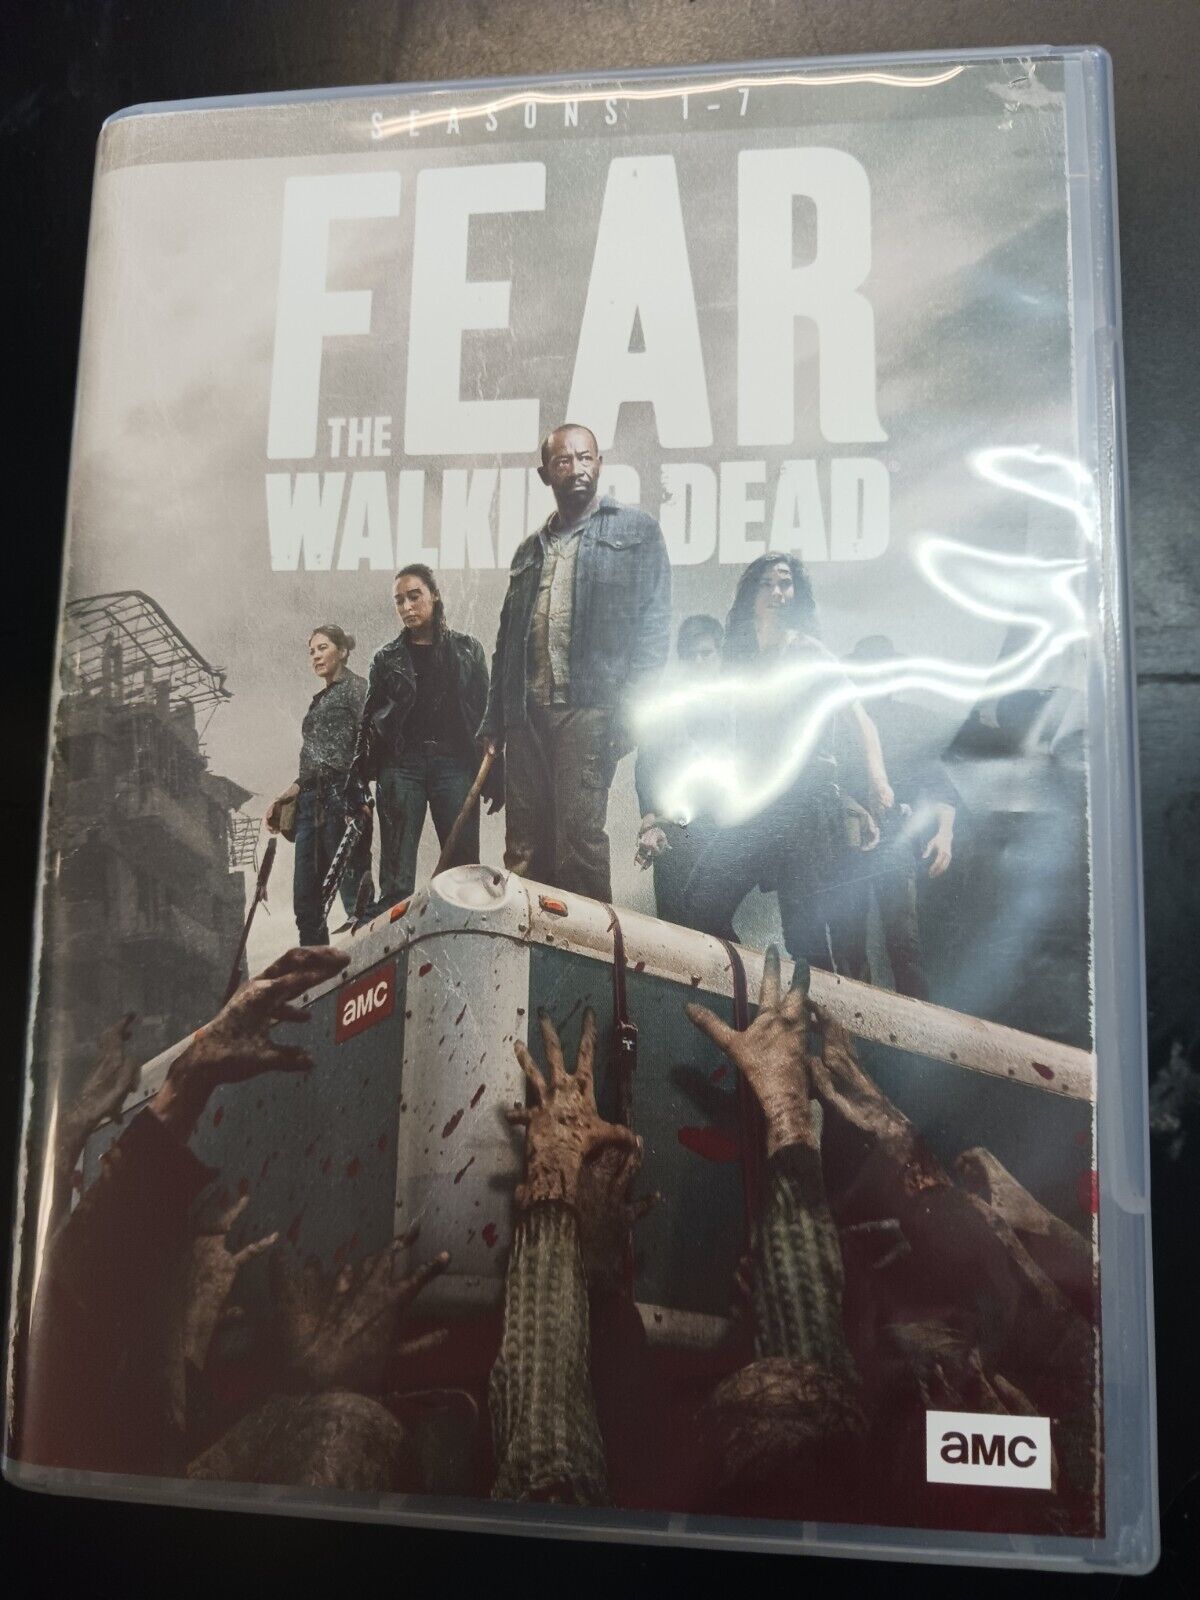 FEAR THE WALKING DEAD  Seasons 1-7 (DVD)  Boxed Set Walmart Exclusive